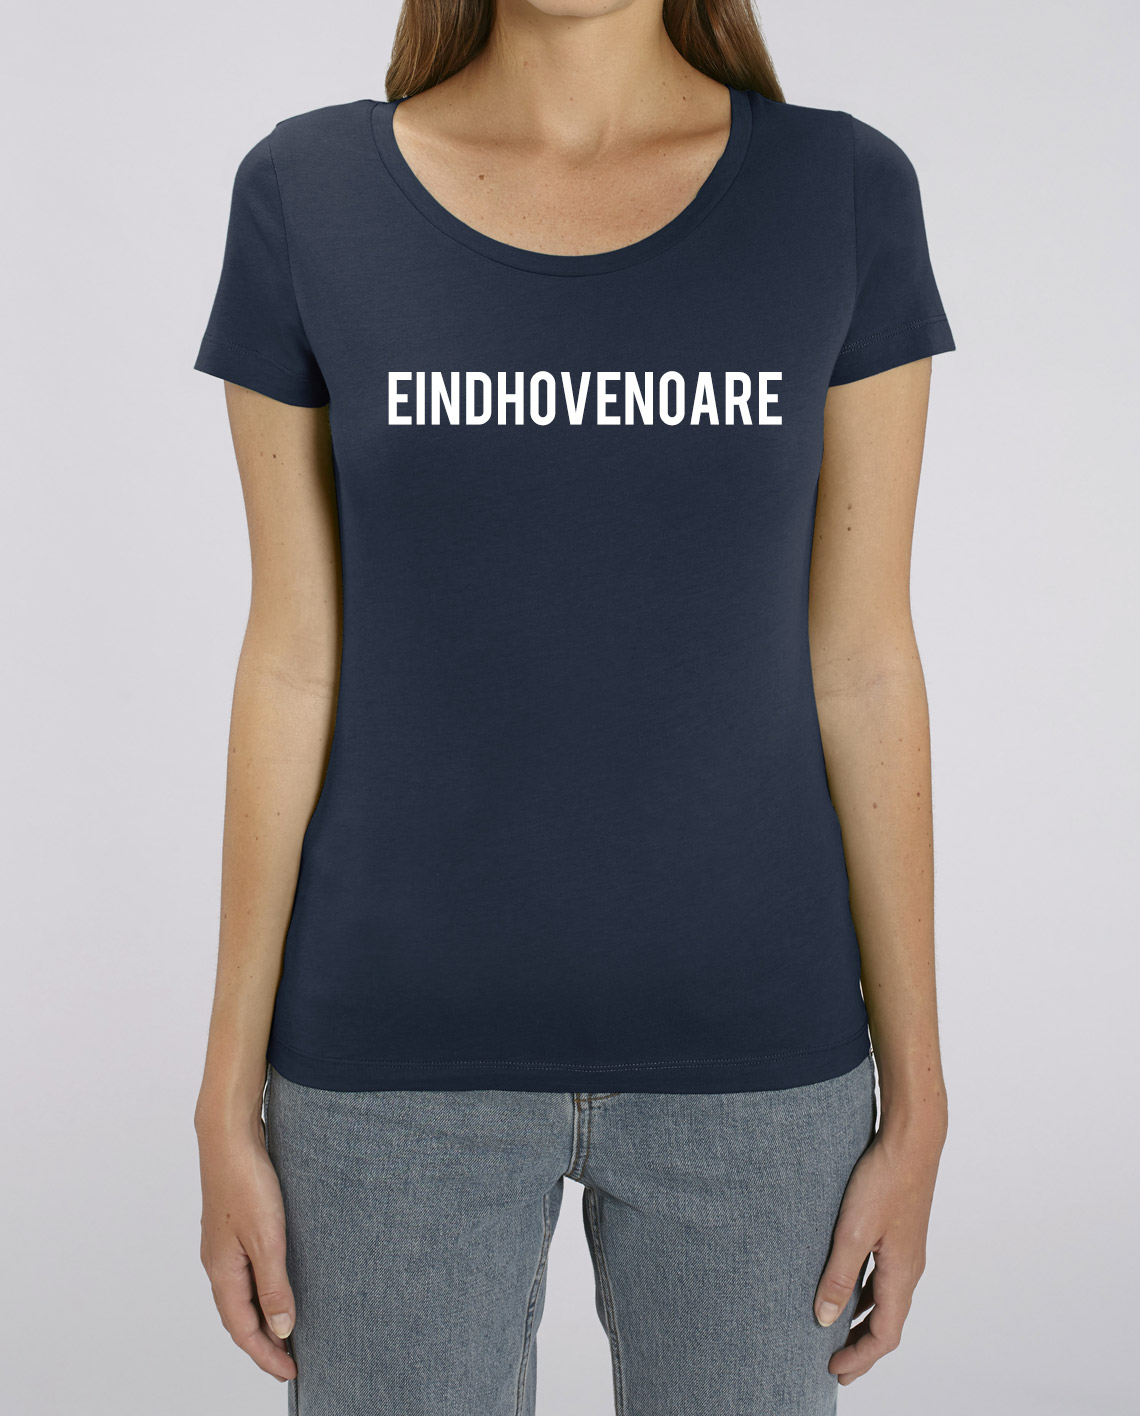 T-Shirt Eindhovenoare (V)